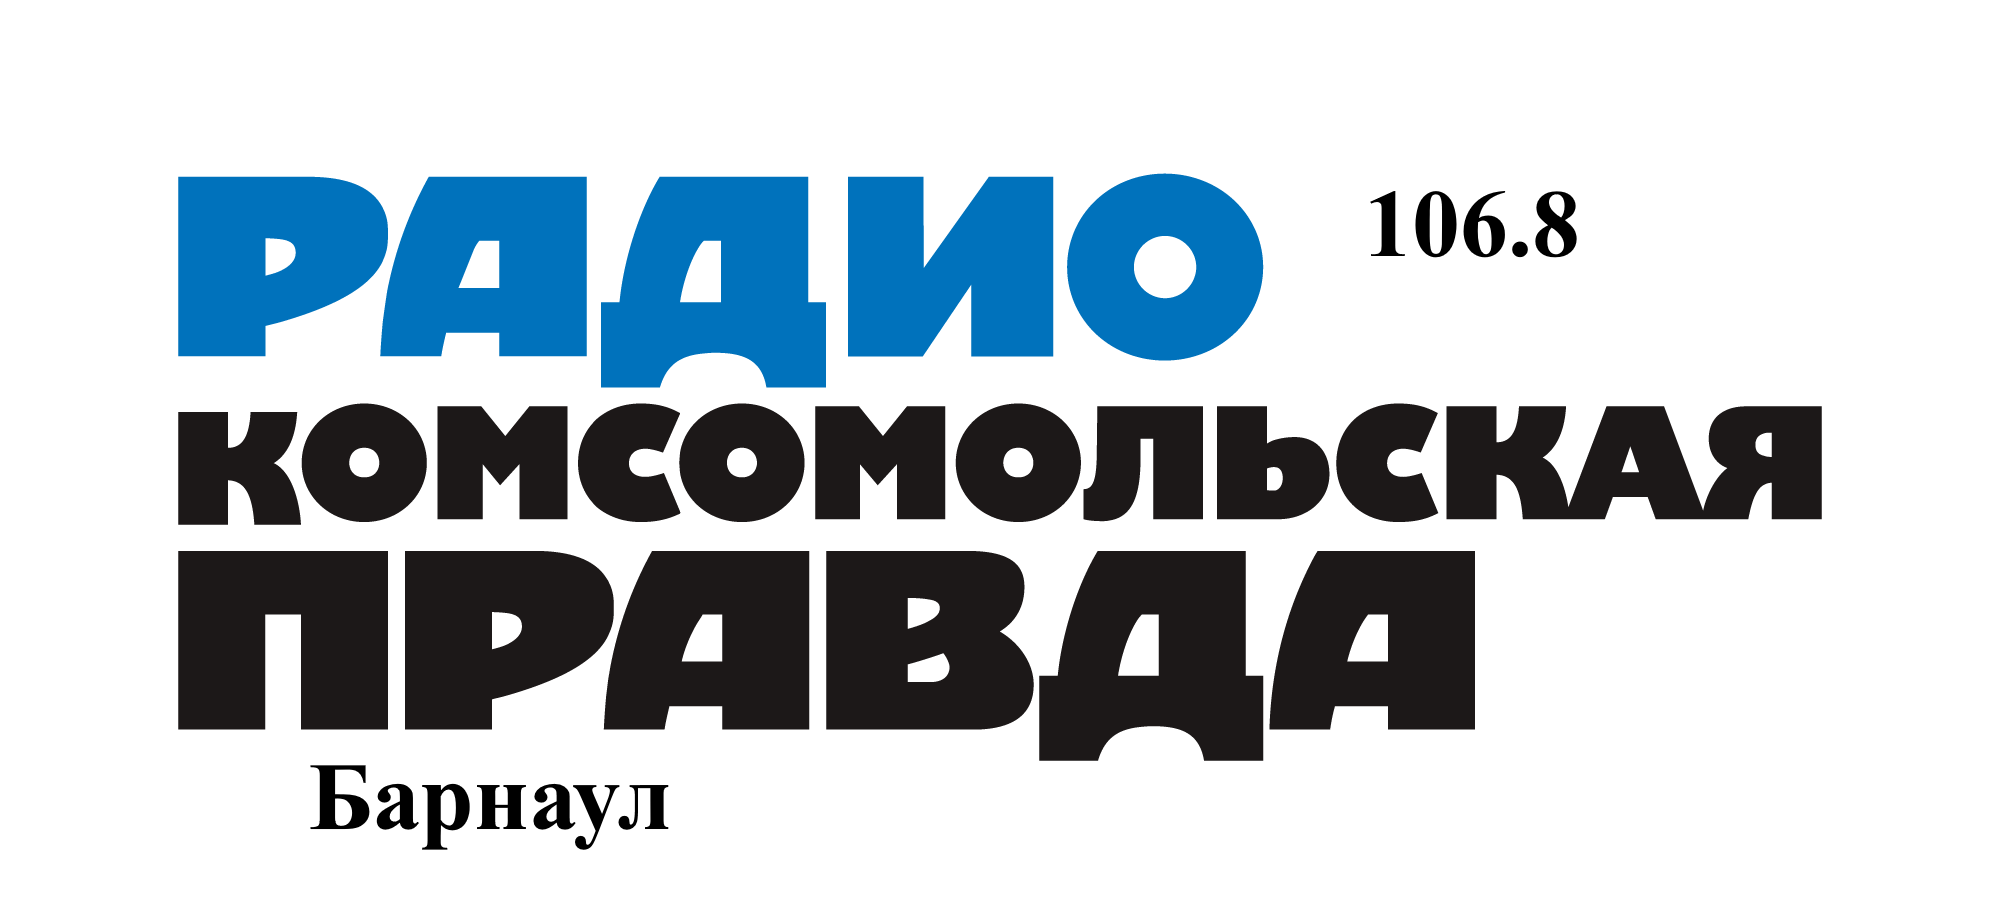 Комсомольская правда 106.8 FM, г. Барнаул